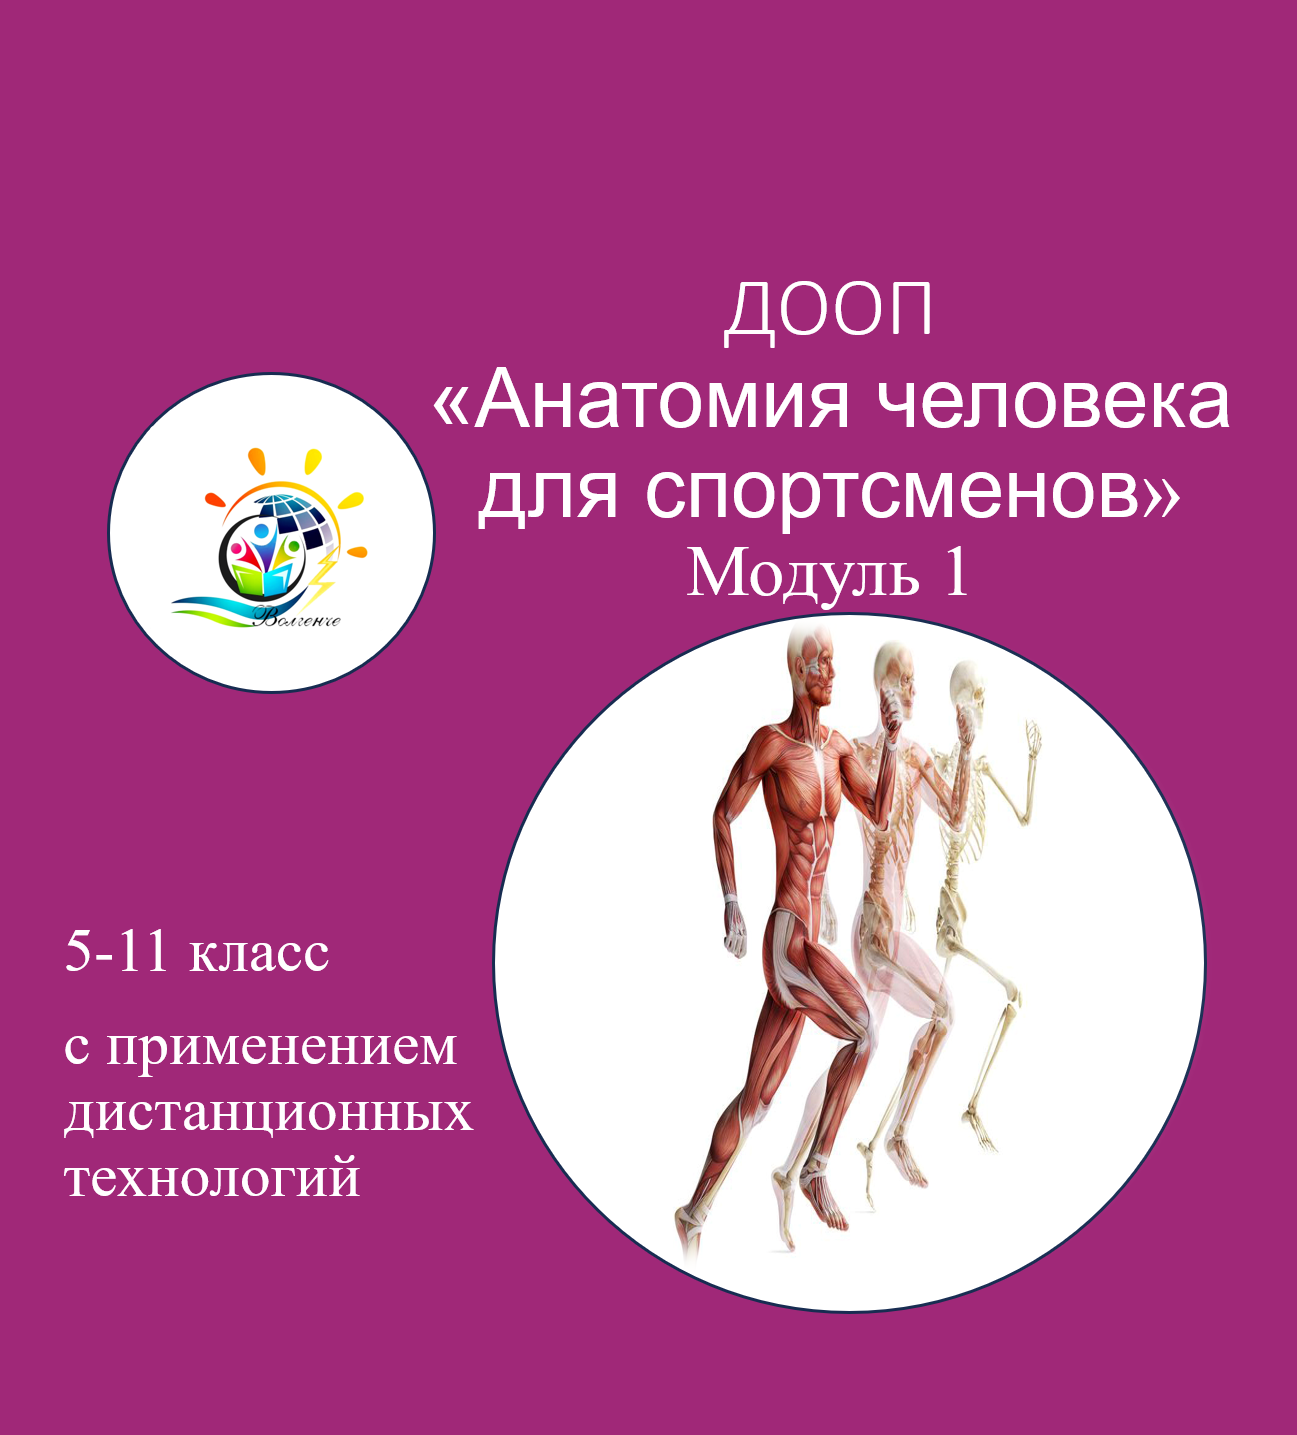 ДООП "Анатомия человека для спортсменов" модуль 1